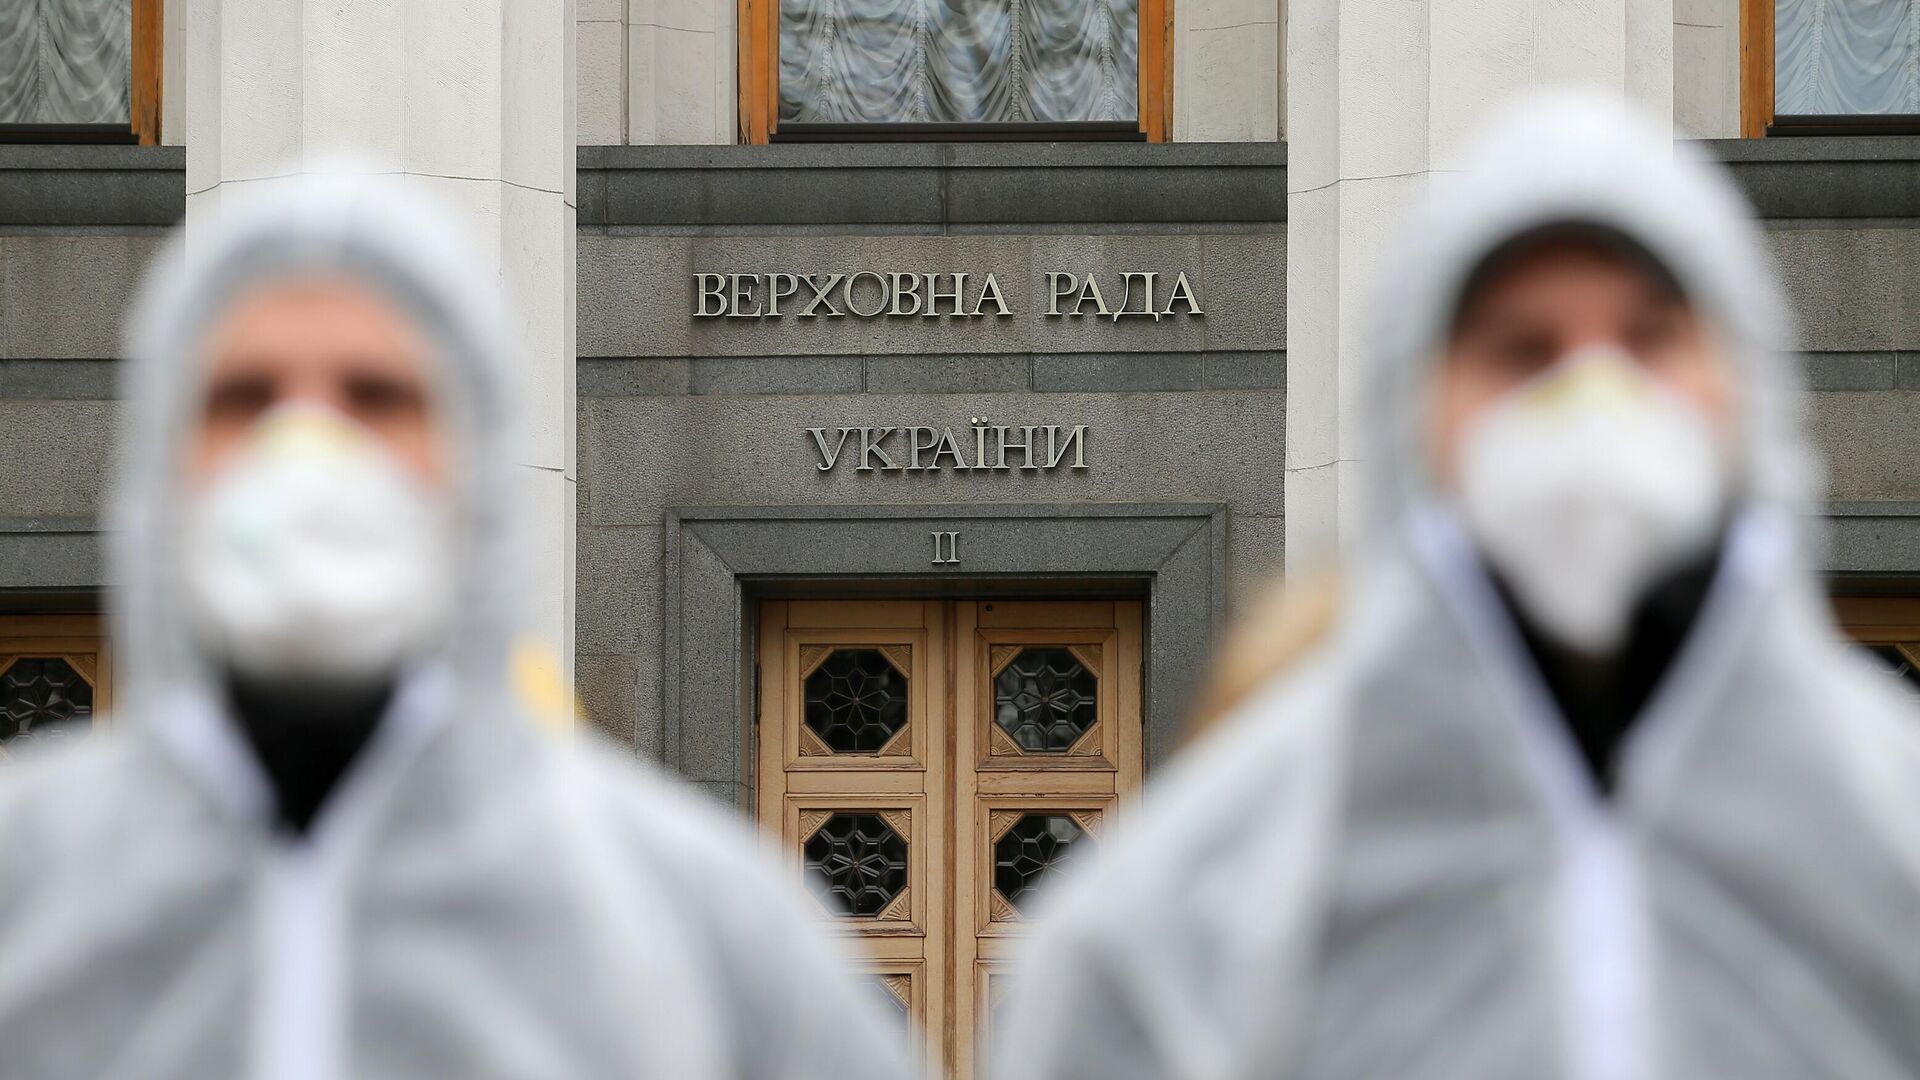 СМИ раскрыло детали "тайной вакцинации" украинских политиков